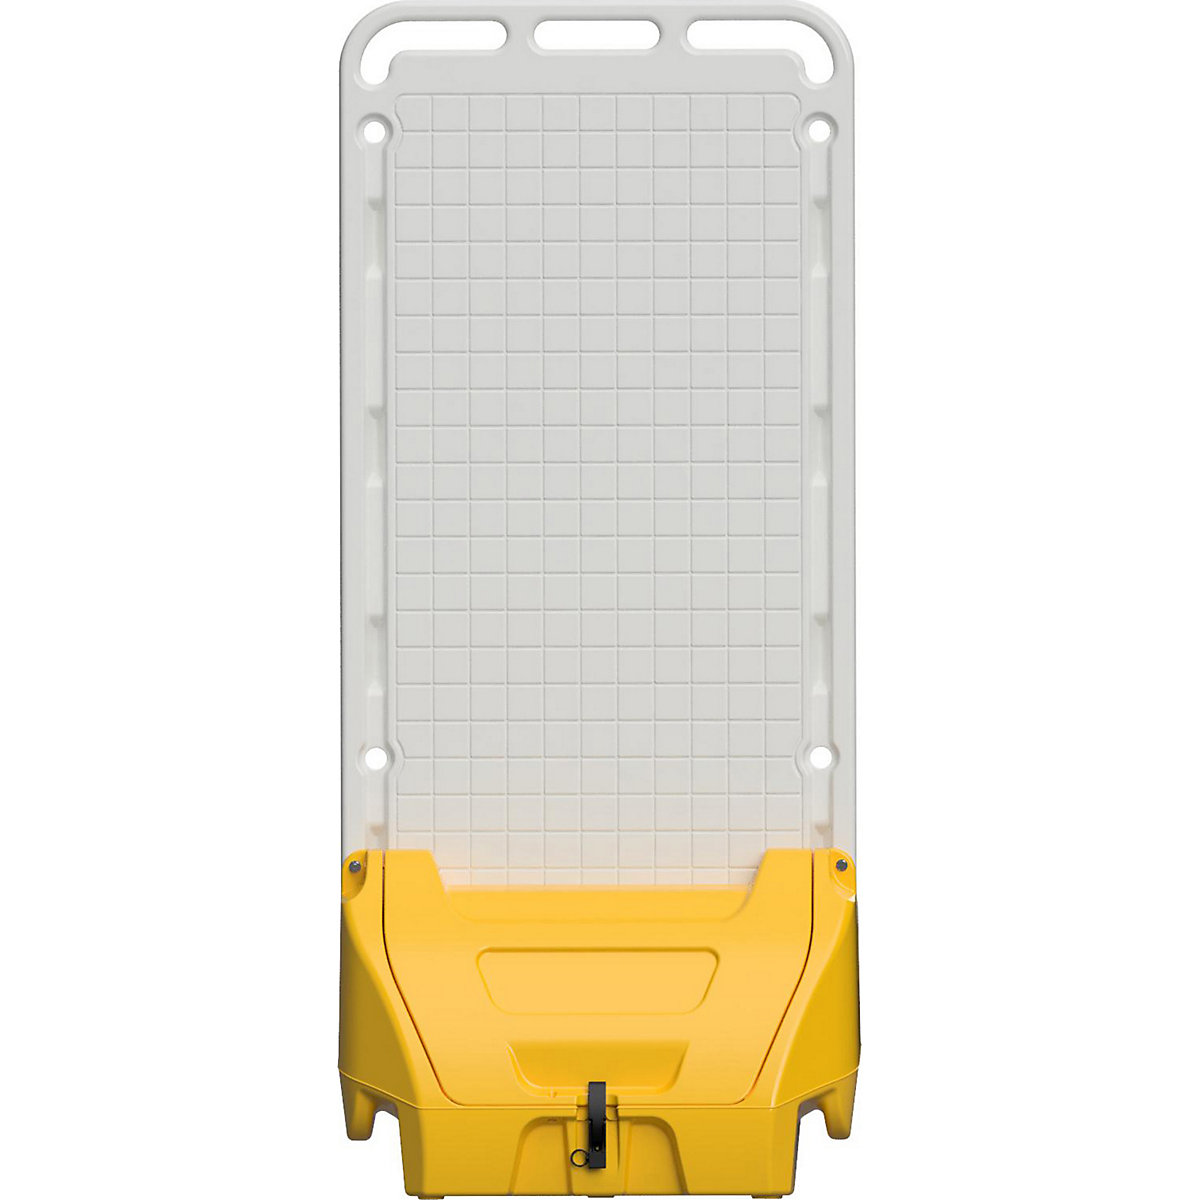 Poste de service mobile SAFETY POINT, avec couvercle verrouillable, joints d'étanchéité, pour produits de sécurité/protection, jaune, à partir de 3 pièces